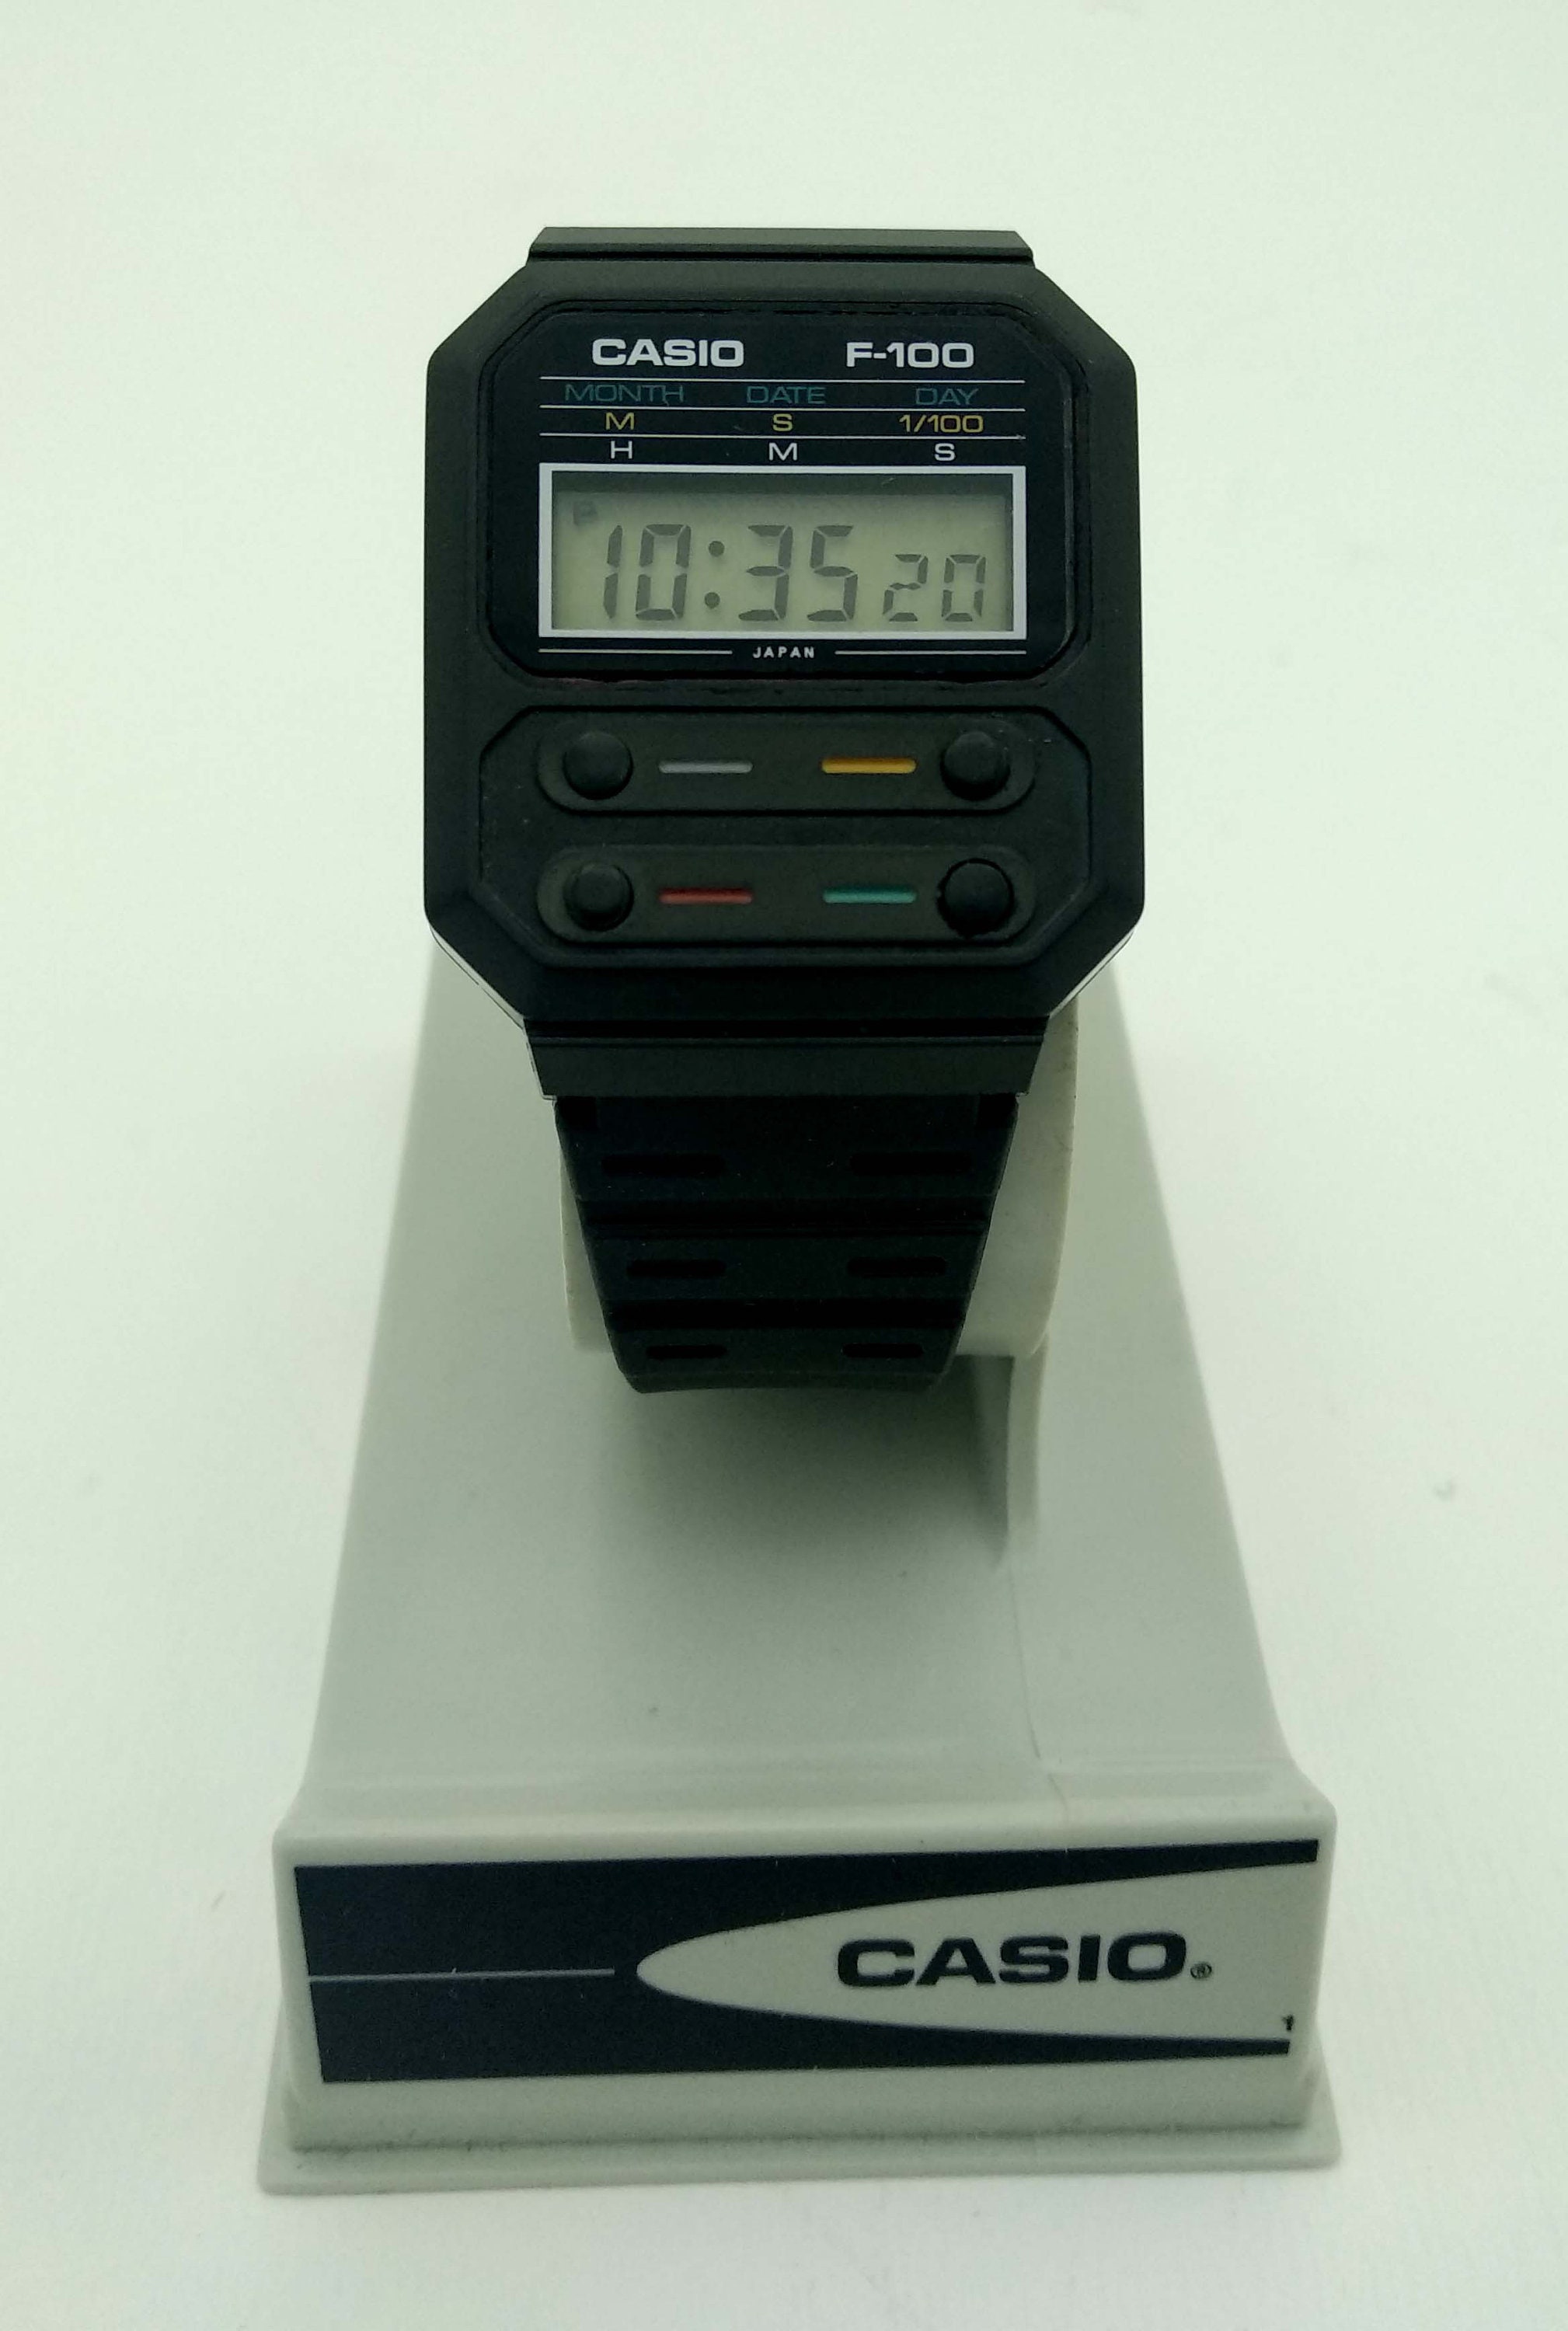 Casio F-100 Watch Module 52 First Plastic Watch Alien Prop - Etsy